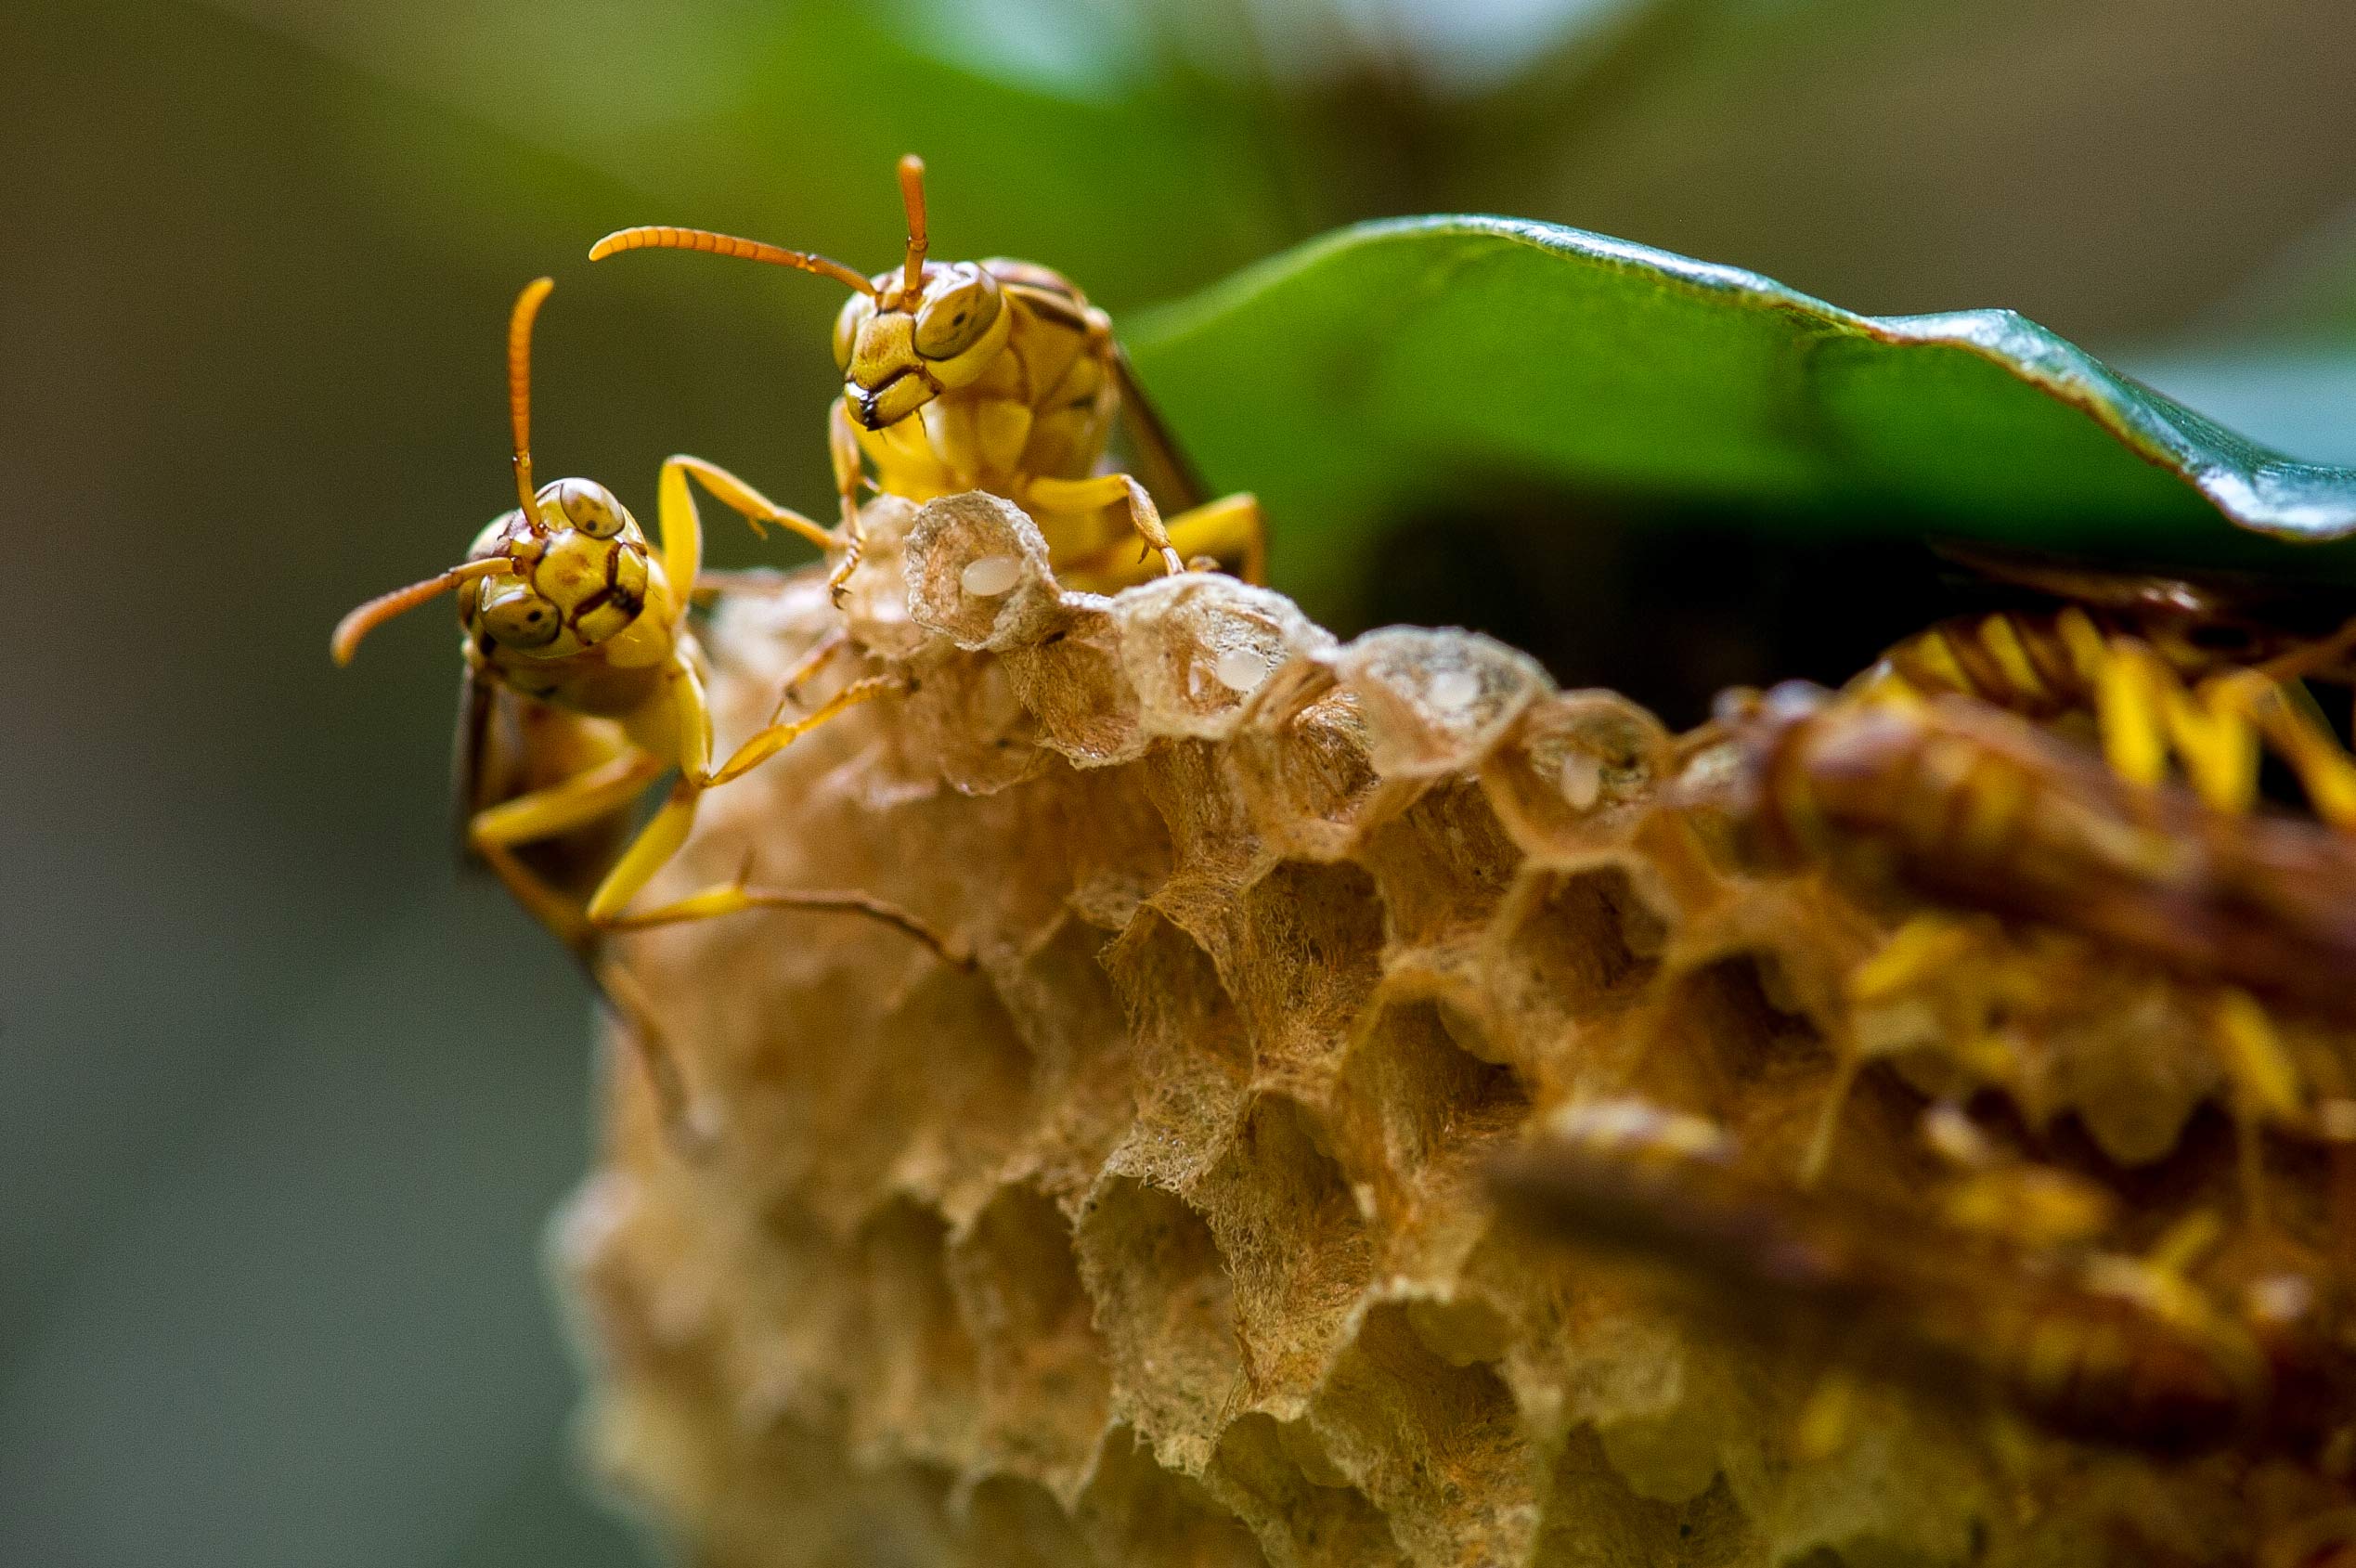 ムモンホソアシナガバチの特徴 巣 生態 虫の写真と生態なら昆虫写真図鑑 ムシミル